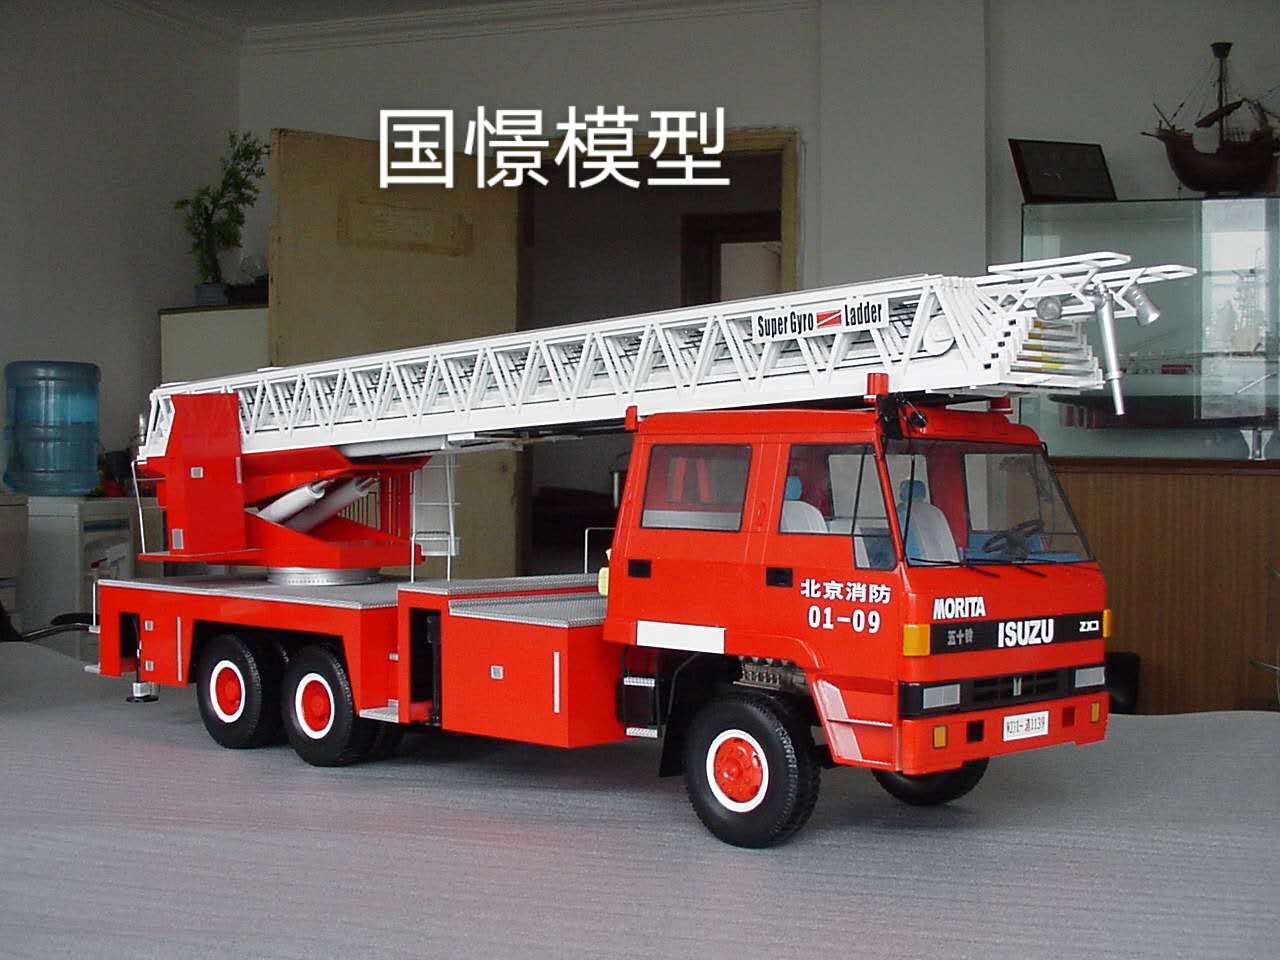 双峰县车辆模型